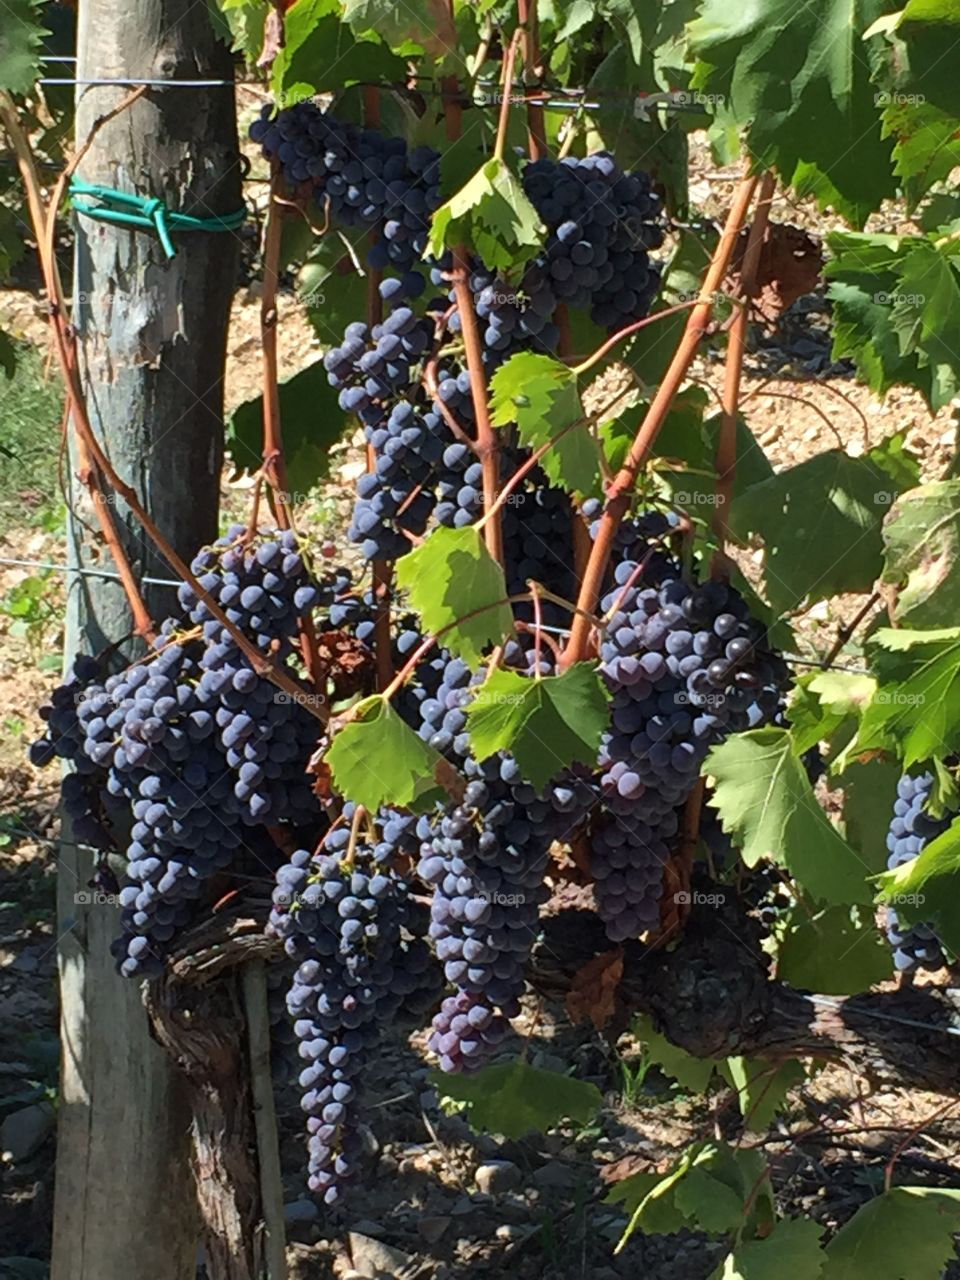 Grapes ready for harvest Gaiole, Italy Tuscany